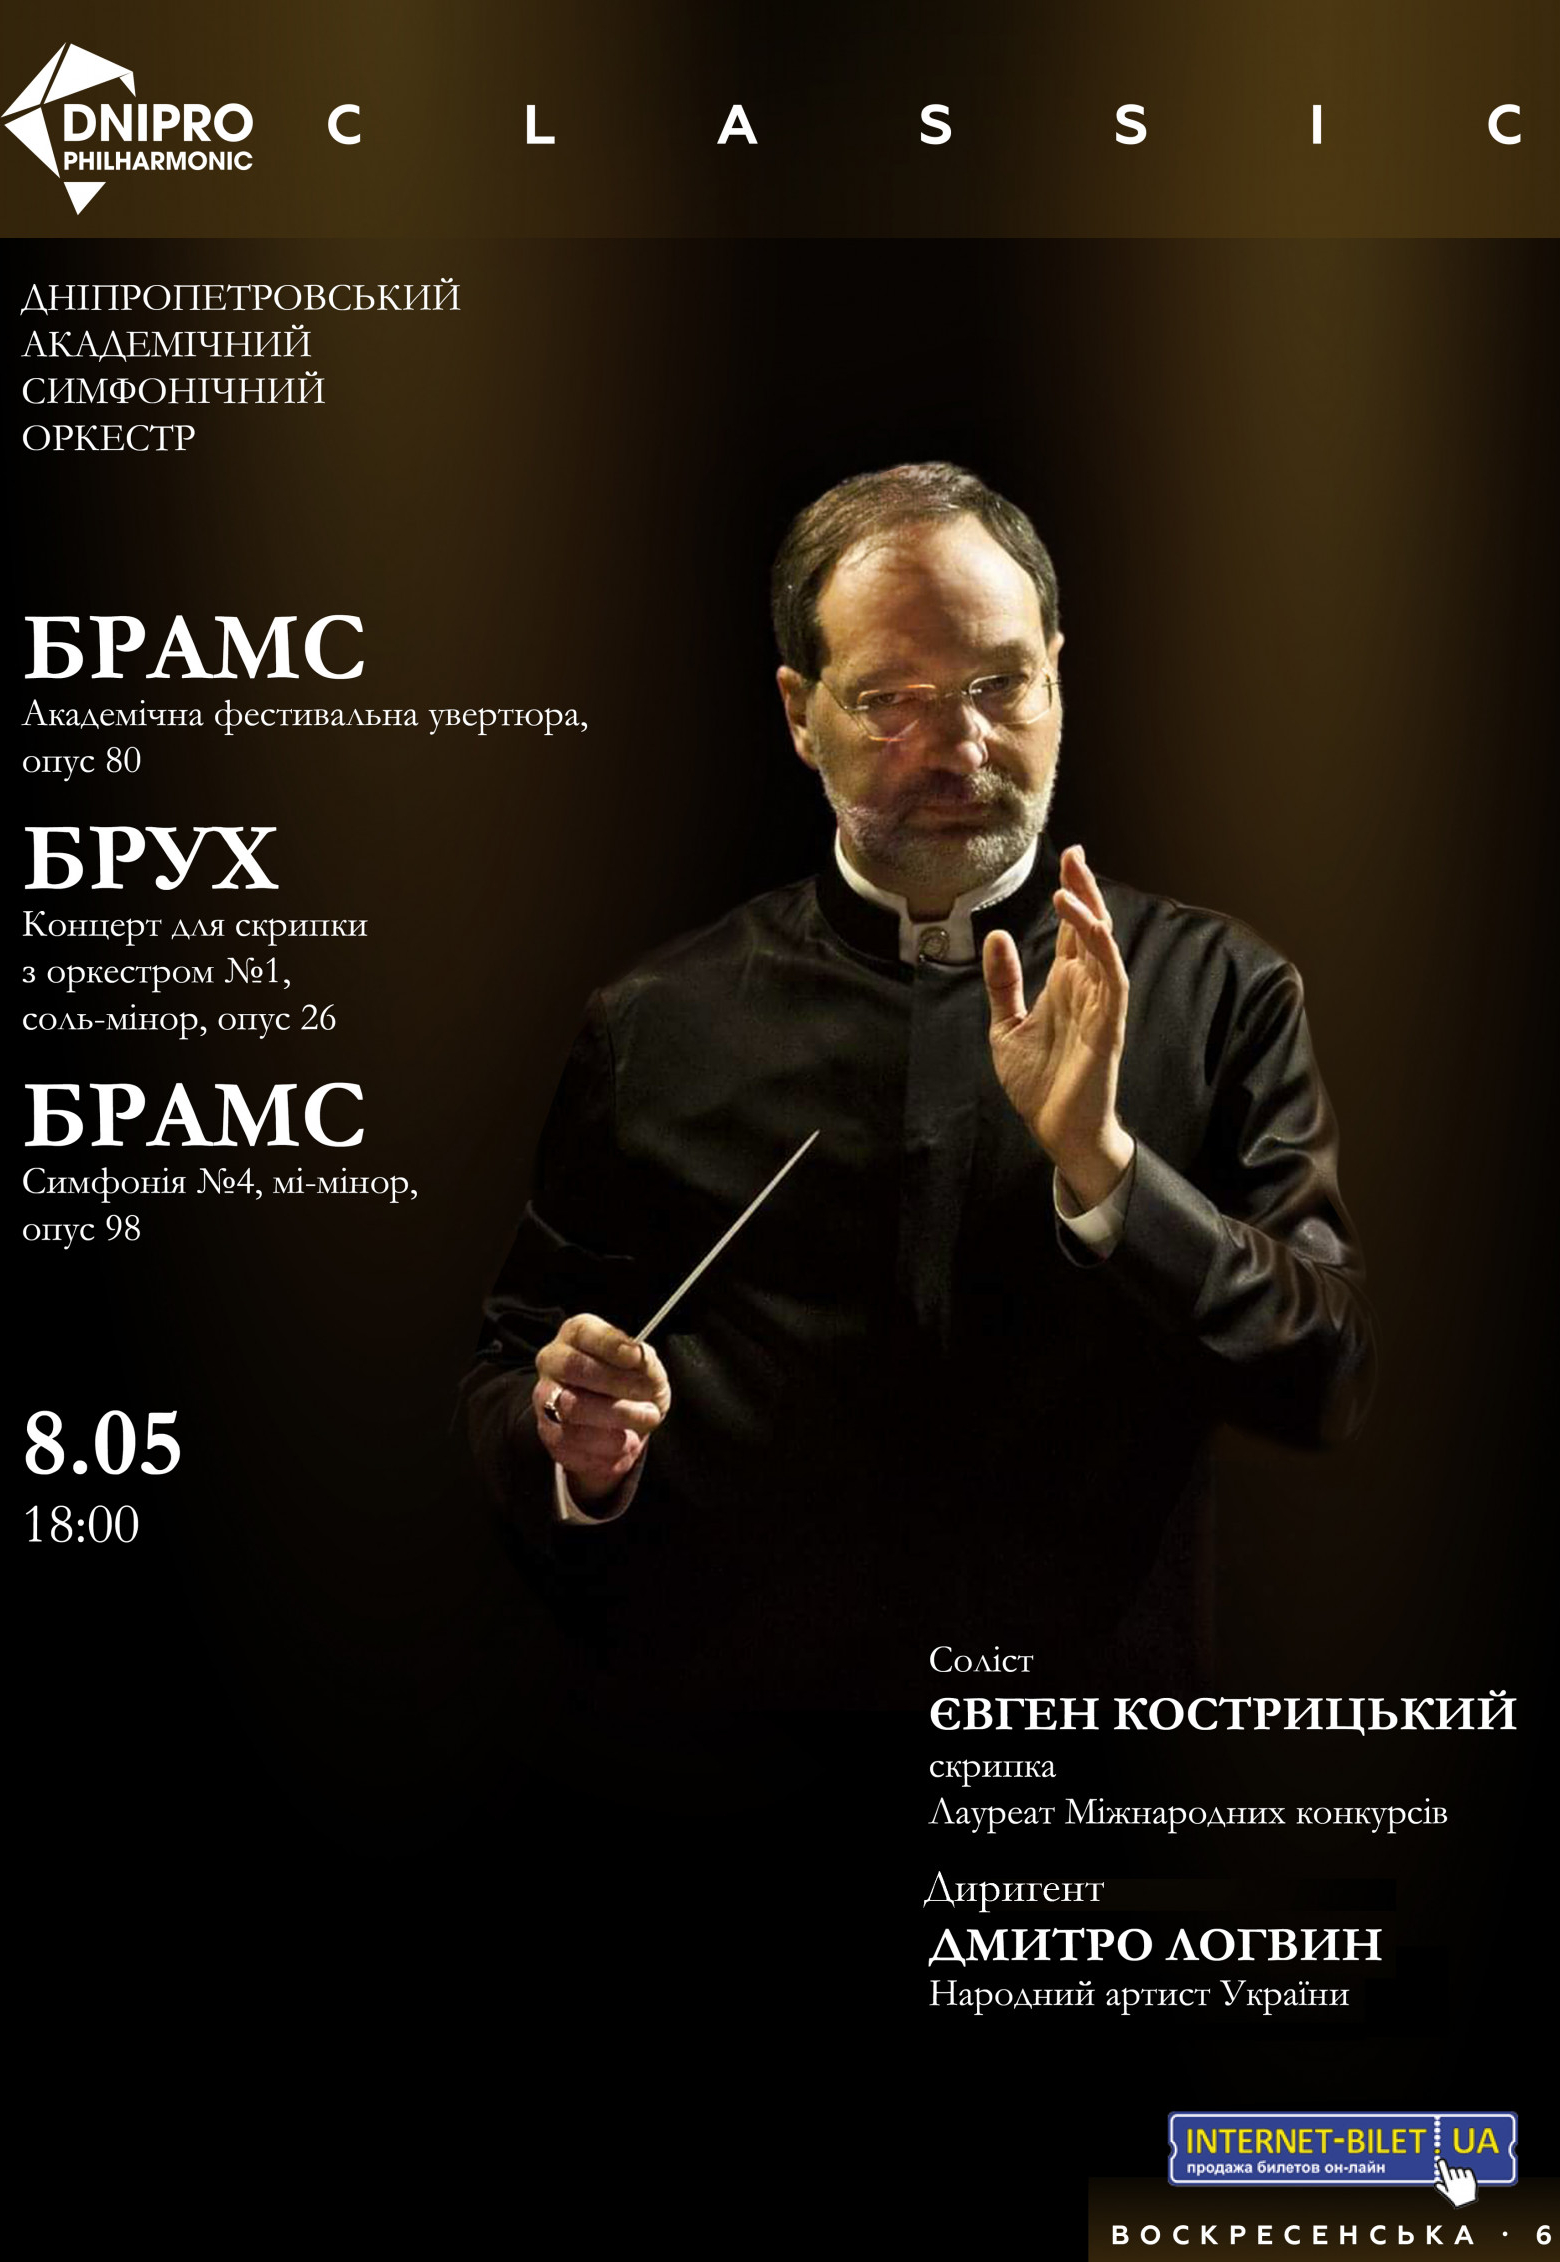 Концерт симфонического оркестра Днепр, 08.05.2021, купить билеты. Афиша Днепра